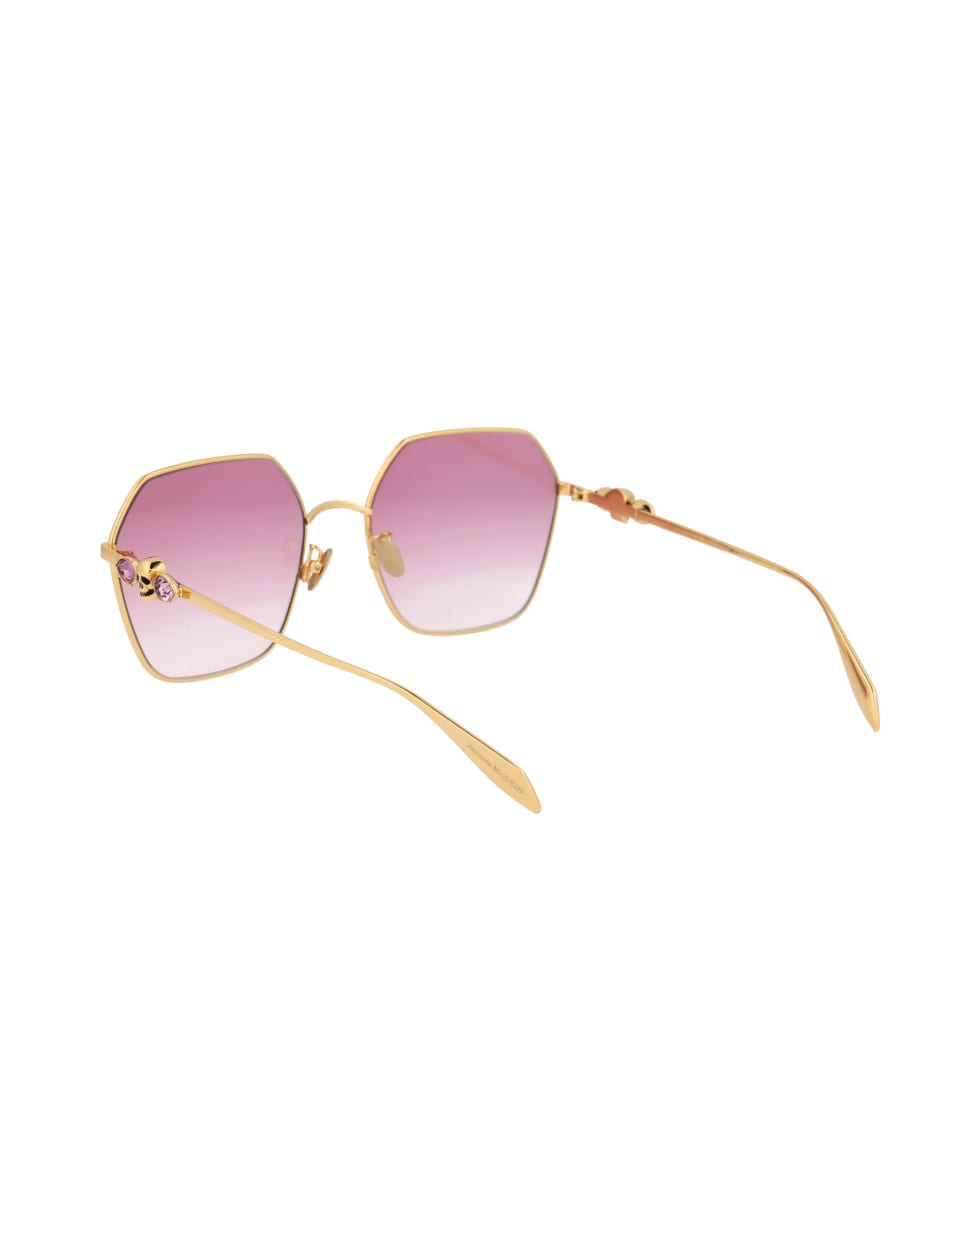 Alexander McQueen Eyewear Am0325s Sunglasses - 003 GOLD GOLD RED